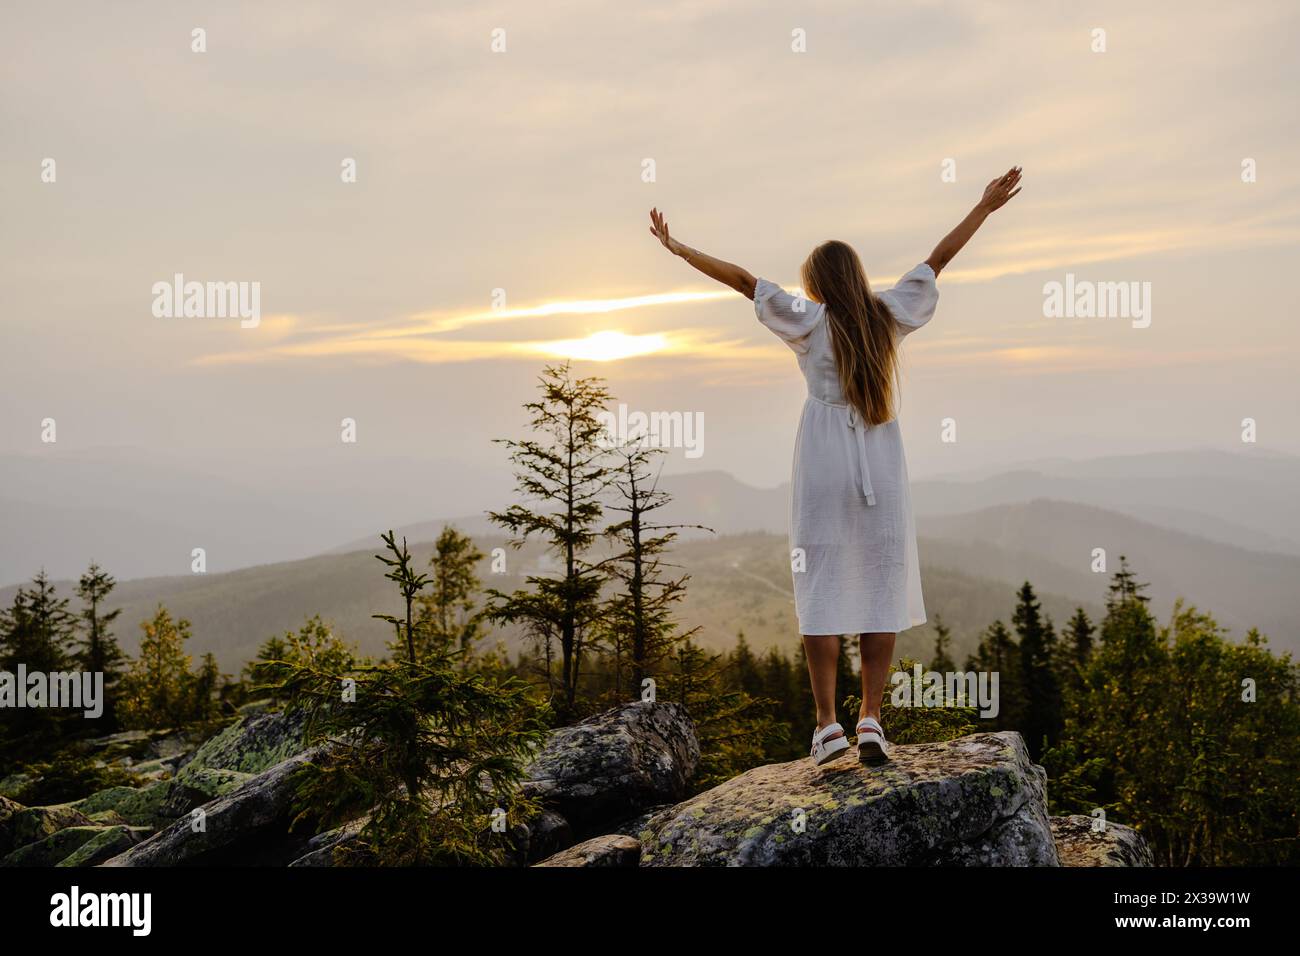 Eine Frau steht triumphierend auf einem Berg mit ausgestreckten Armen und zeigt ein Gefühl von Erfolg und Sieg gegen den Berg b Stockfoto